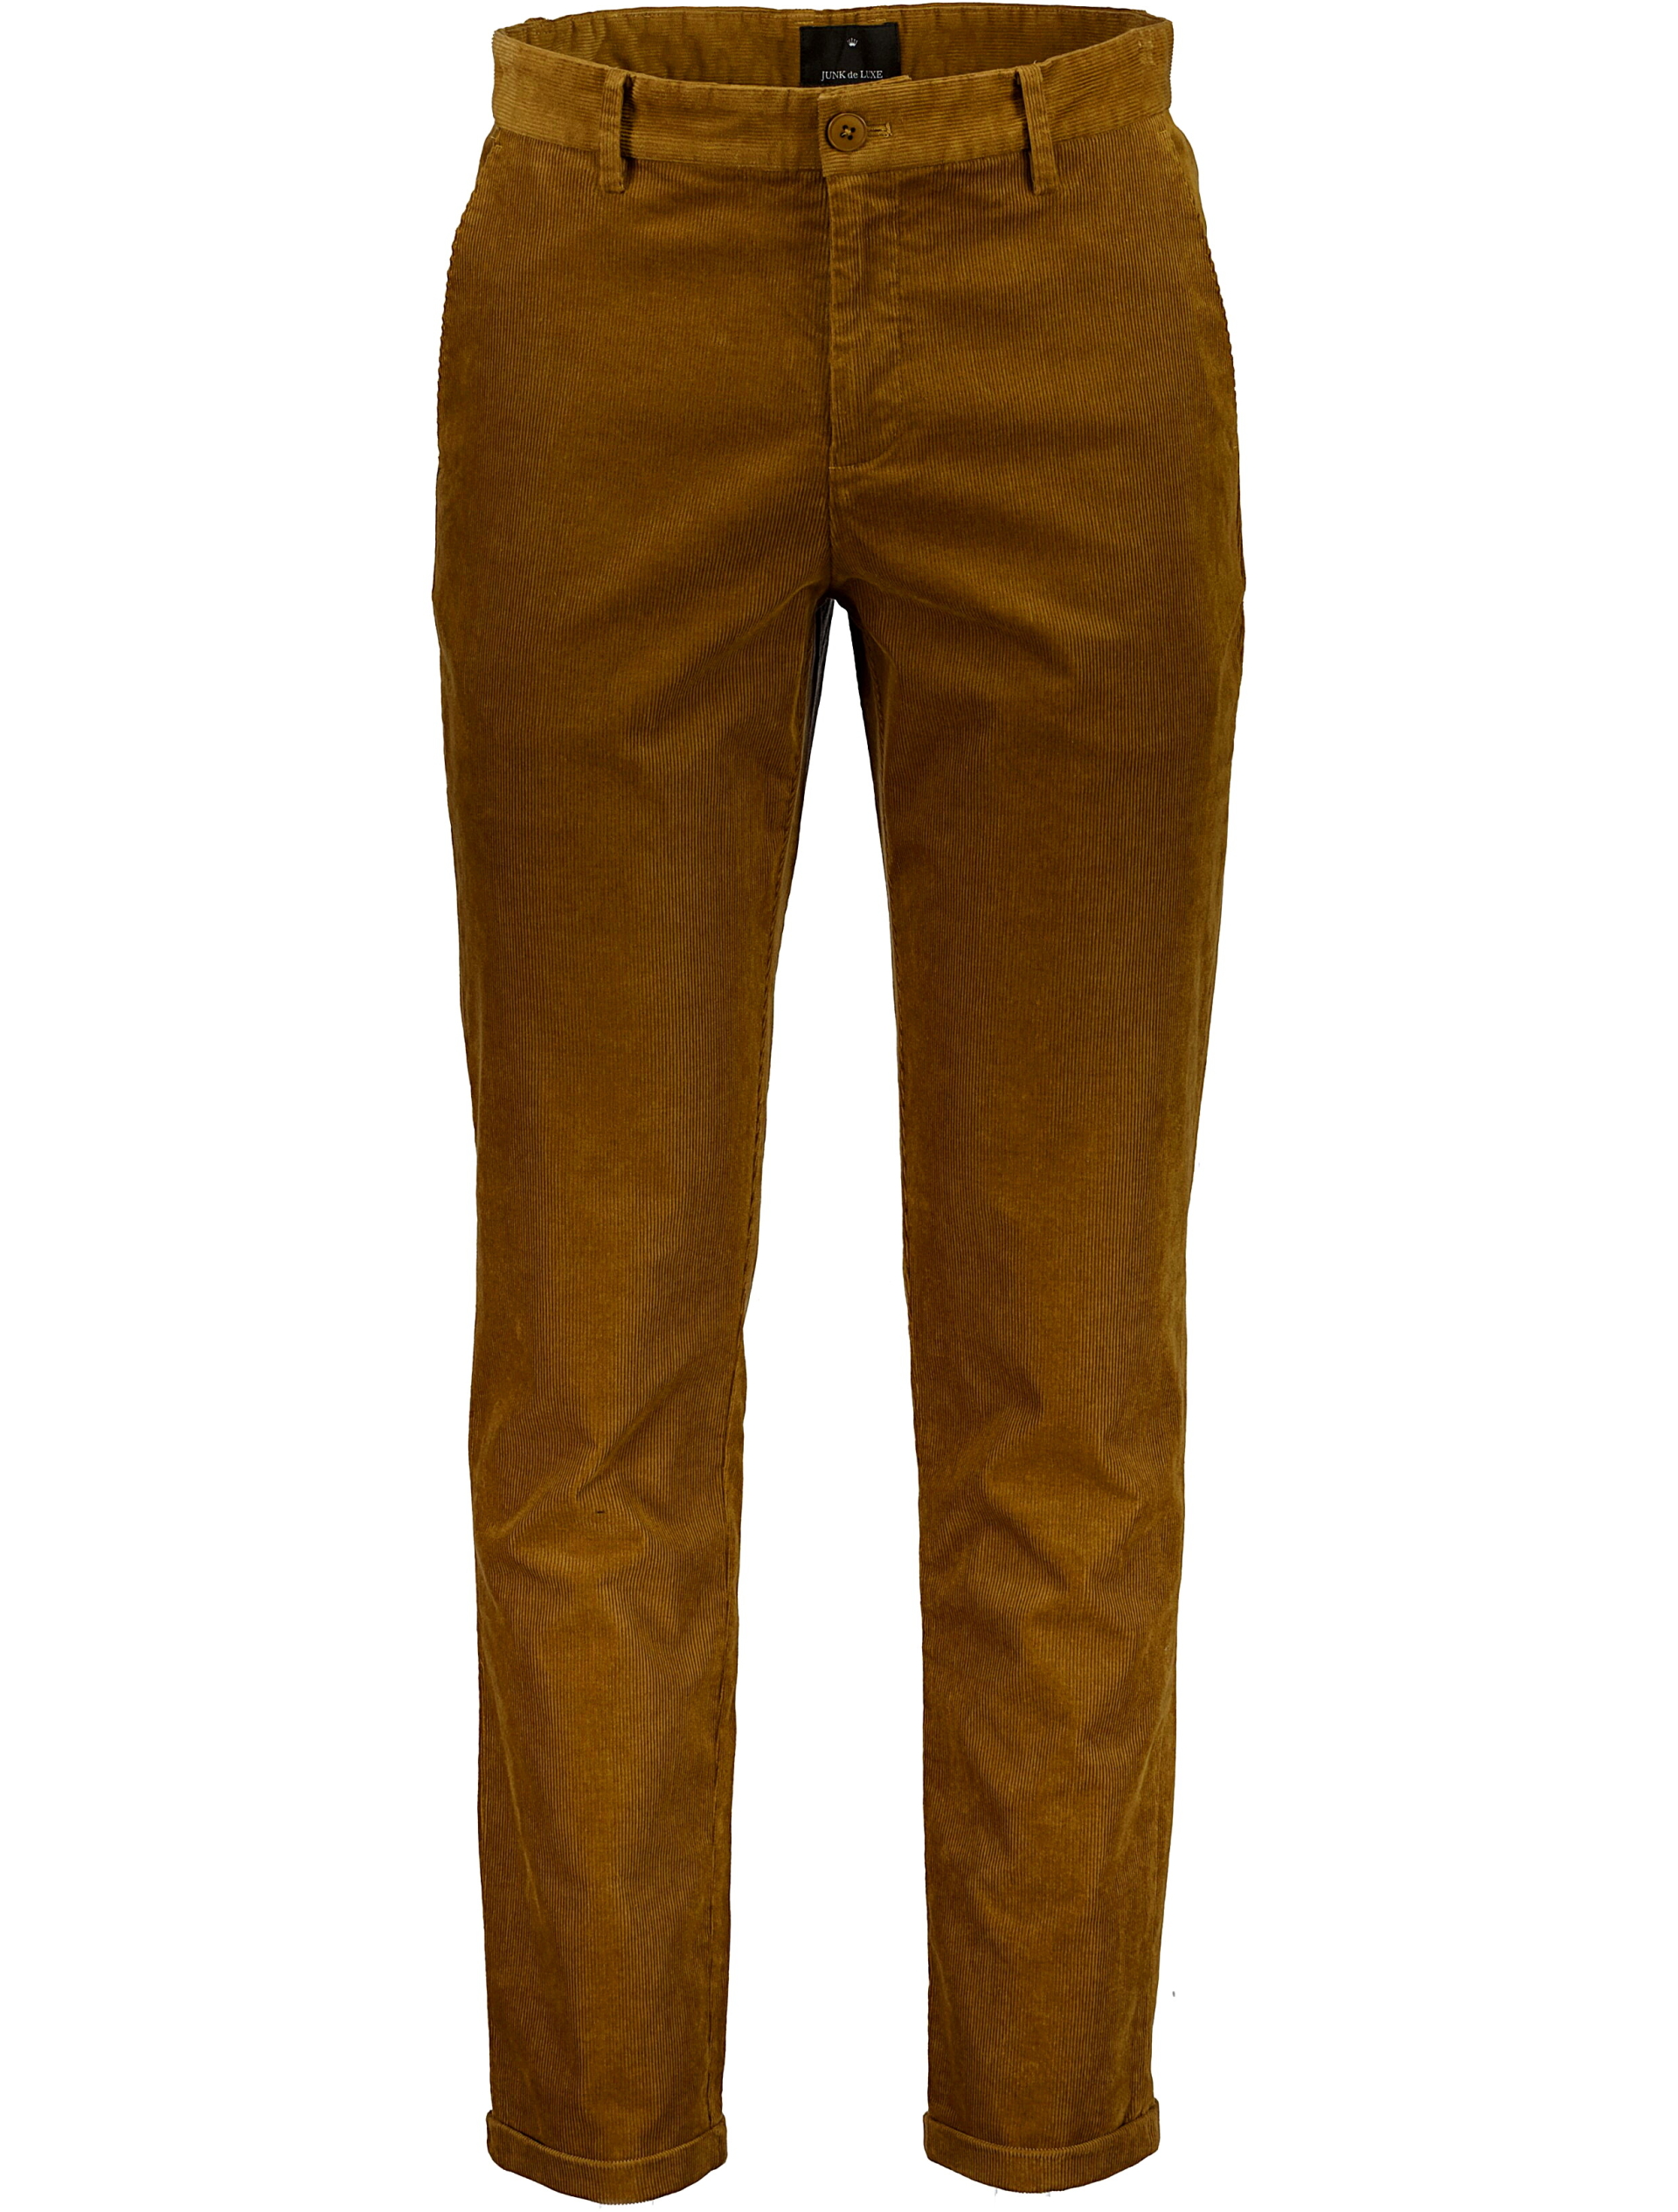 Junk de Luxe Klassiske bukser brun / camel